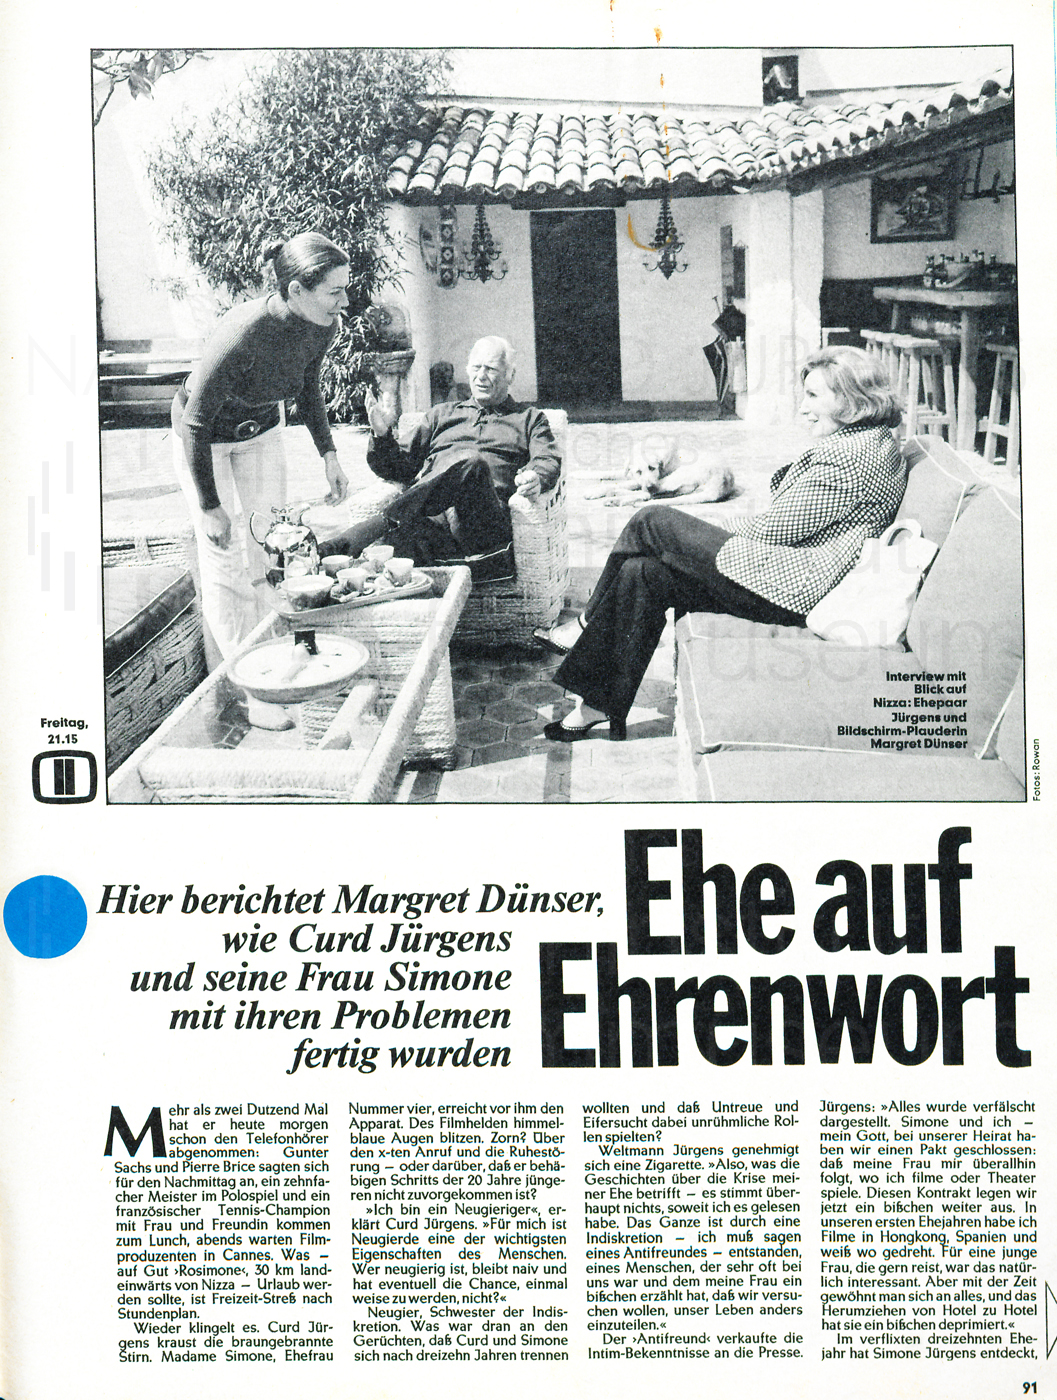 Hoerzu: "Ehe auf Ehrenwort", 1972